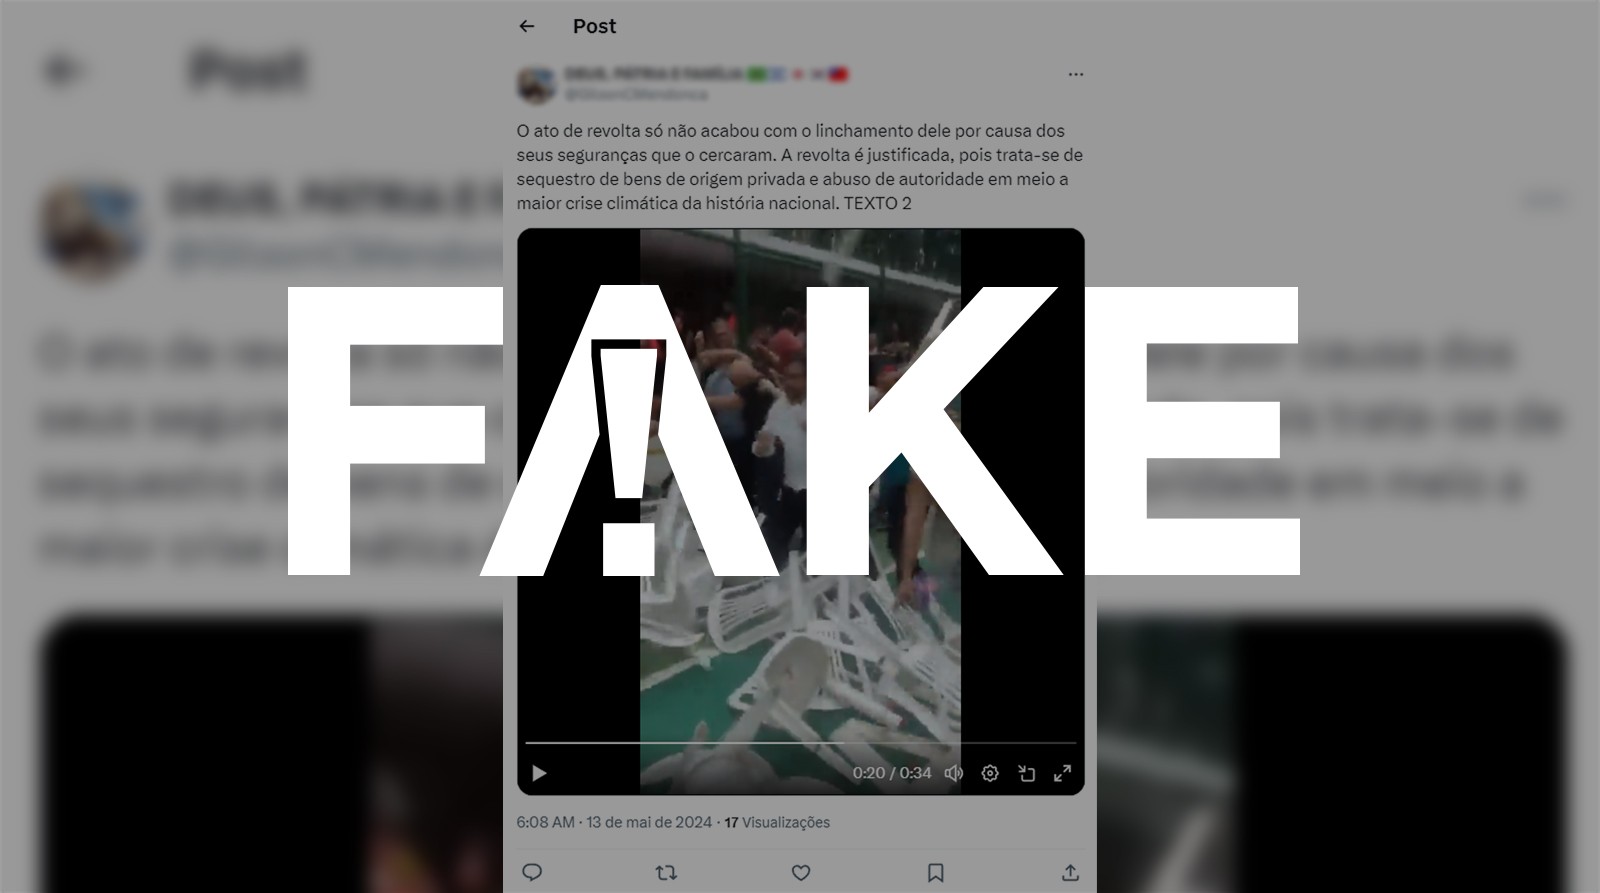 É #FAKE que vídeo mostre agressão a prefeito de Canoas em ginásio no Rio Grande do Sul